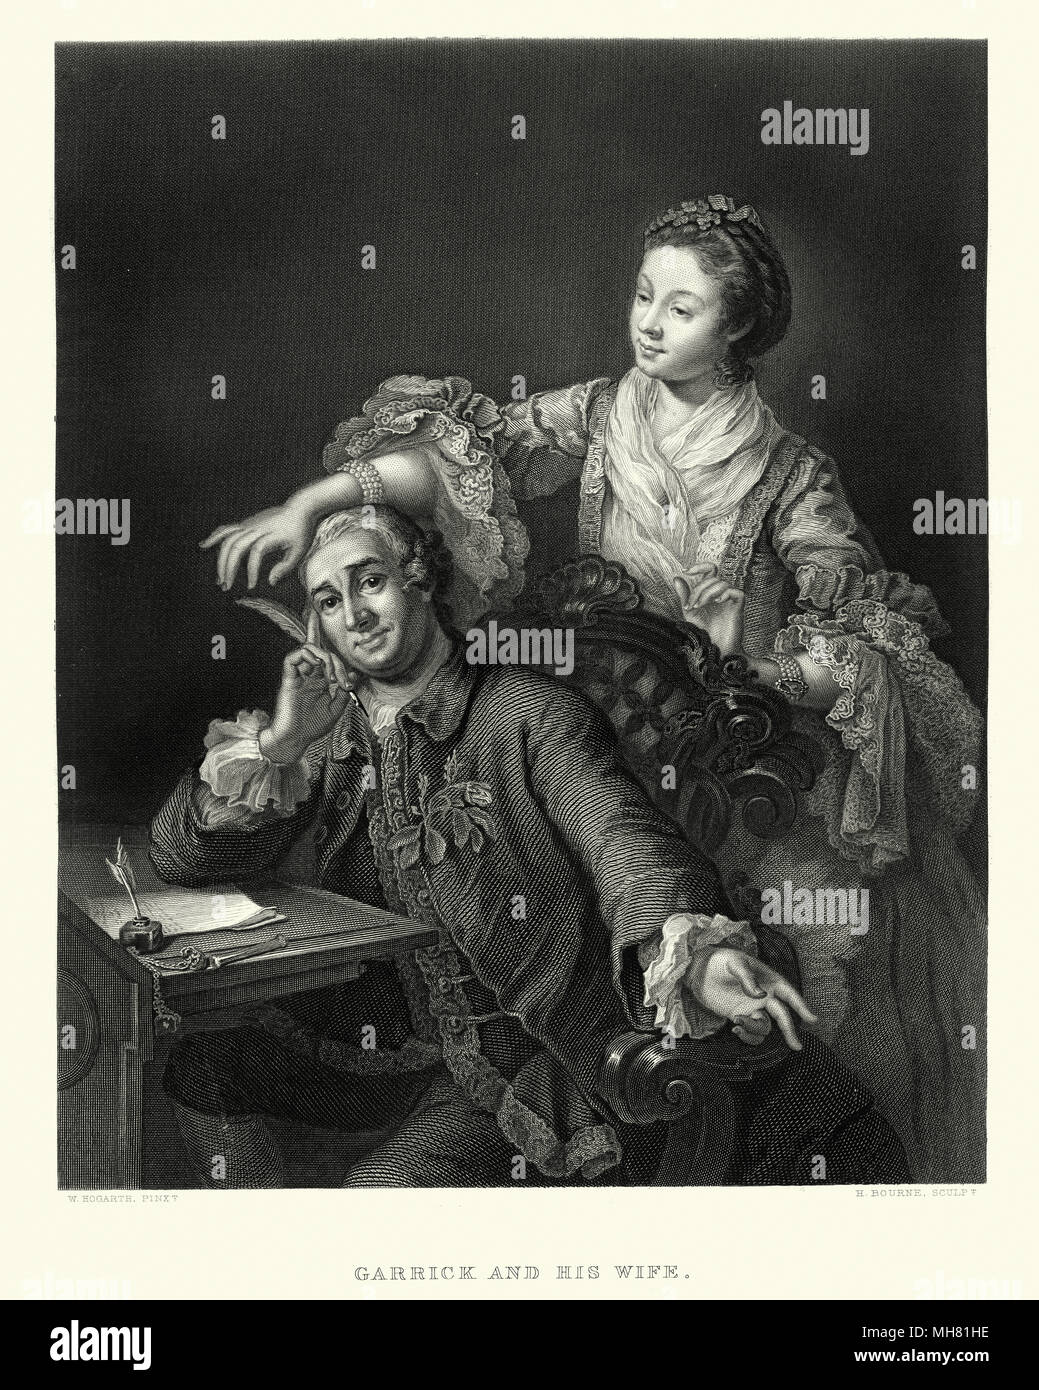 Vintage illustration de David Garrick avec son épouse Eva-Maria Veigel, après William Hogarth. 17e siècle. David Garrick est un acteur, dramaturge, directeur de théâtre et producteur qui a influencé presque tous les aspects de la pratique théâtrale à travers le 18e siècle. Banque D'Images